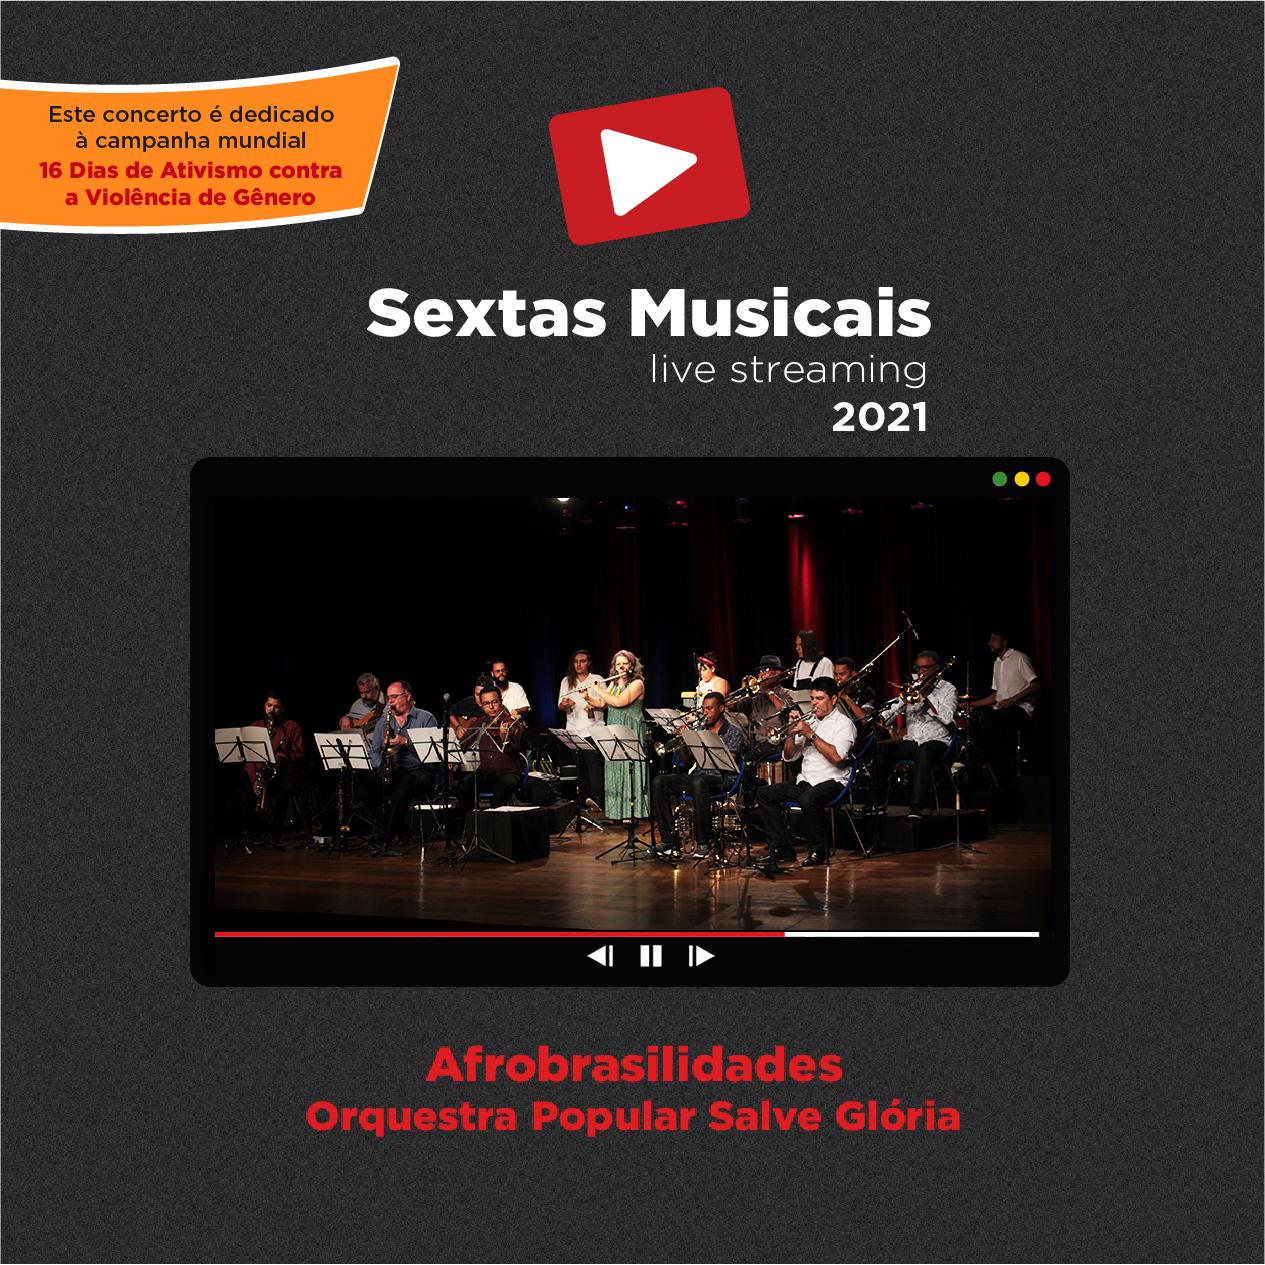 Sextas Musicais - Live streaming: Afrobrasilidades Orquestra Popular Salve Glória